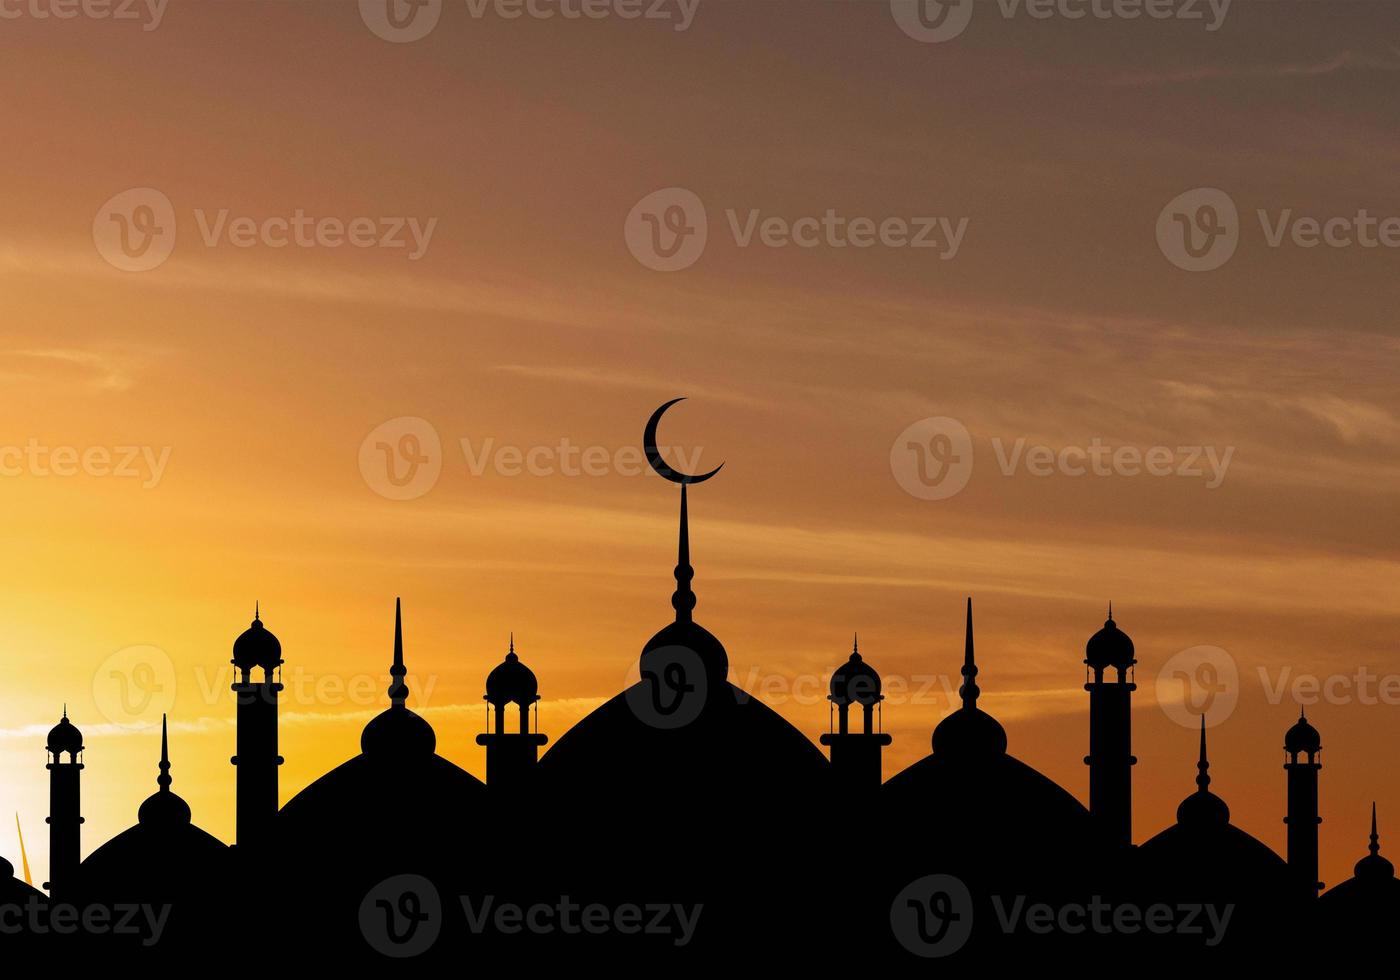 cúpula de mezquitas en el cielo crepuscular azul oscuro y luna creciente en el fondo, símbolo religión islámica ramadán y espacio libre para texto árabe, eid al-adha, eid al-fitr, mubarak, año nuevo islámico muharram foto